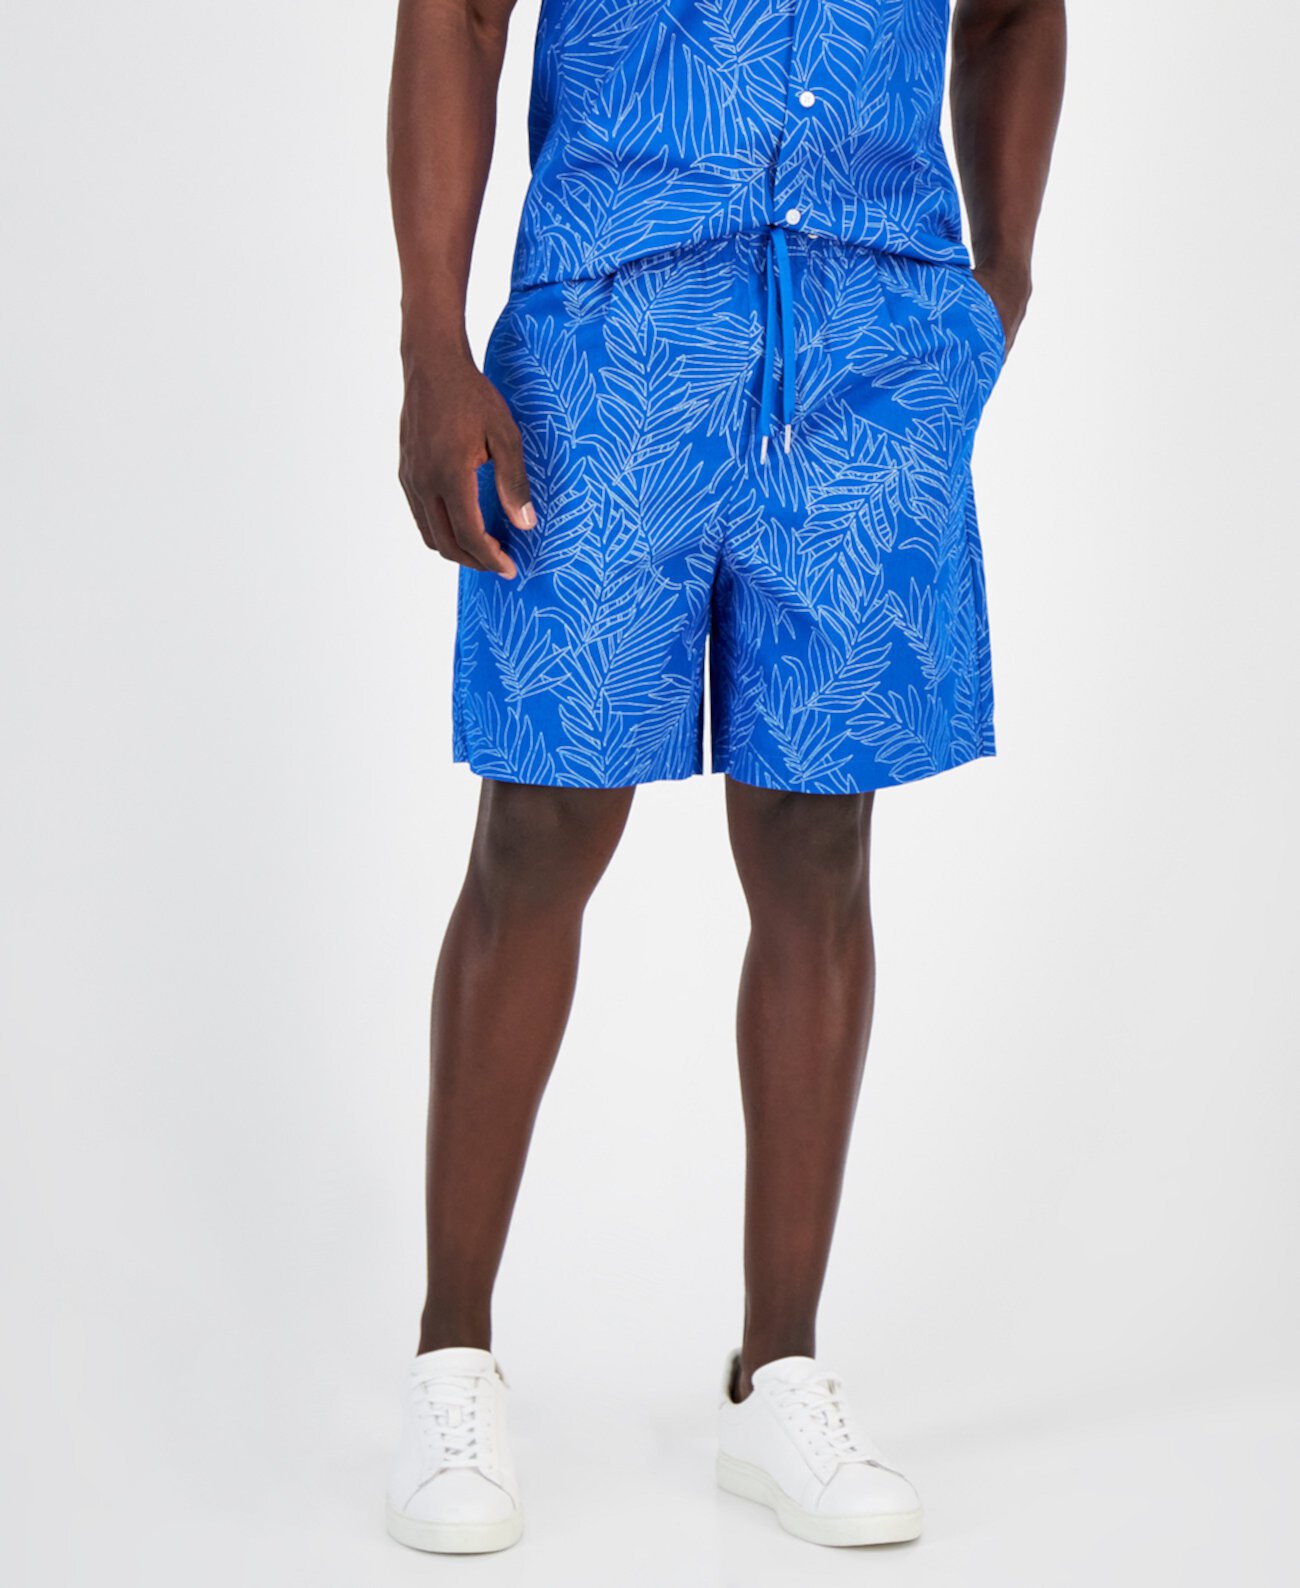 Мужские шорты с кулиской и принтом пальм, созданные для Macy's Armani